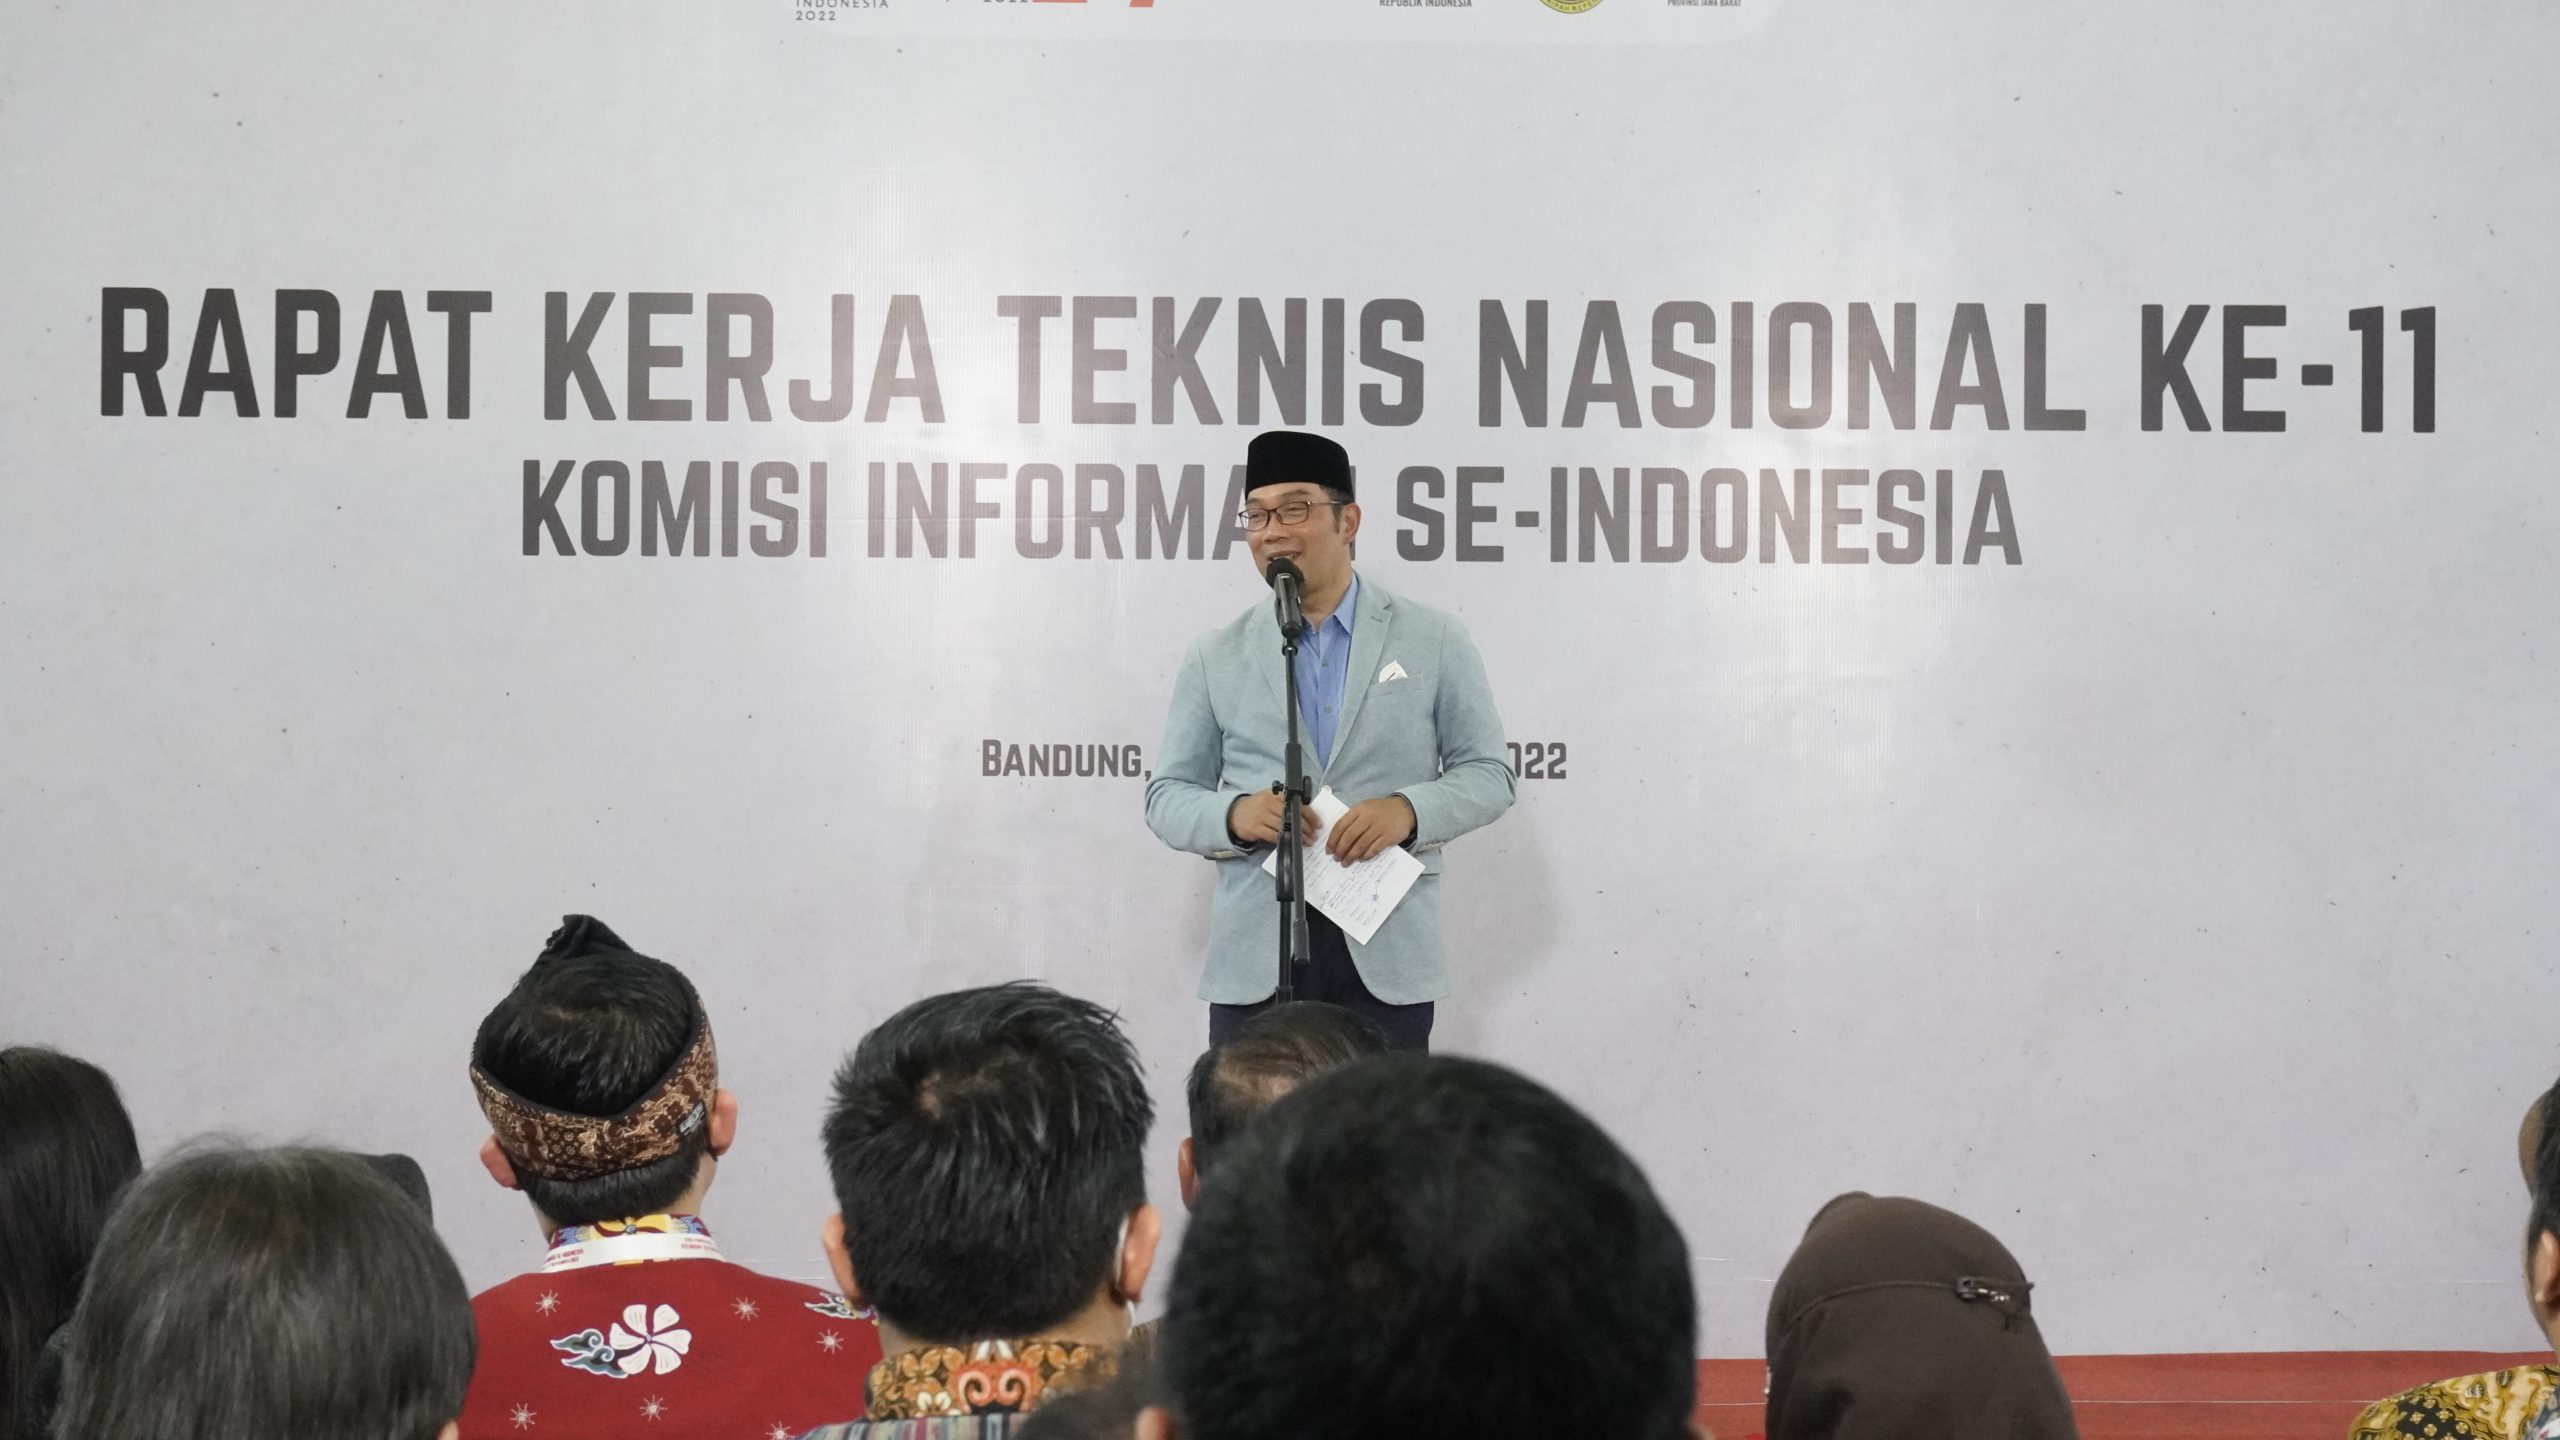 Rapat Kerja Teknis Komisi Informasi se-Indonesia Resmi Digelar di Bandung